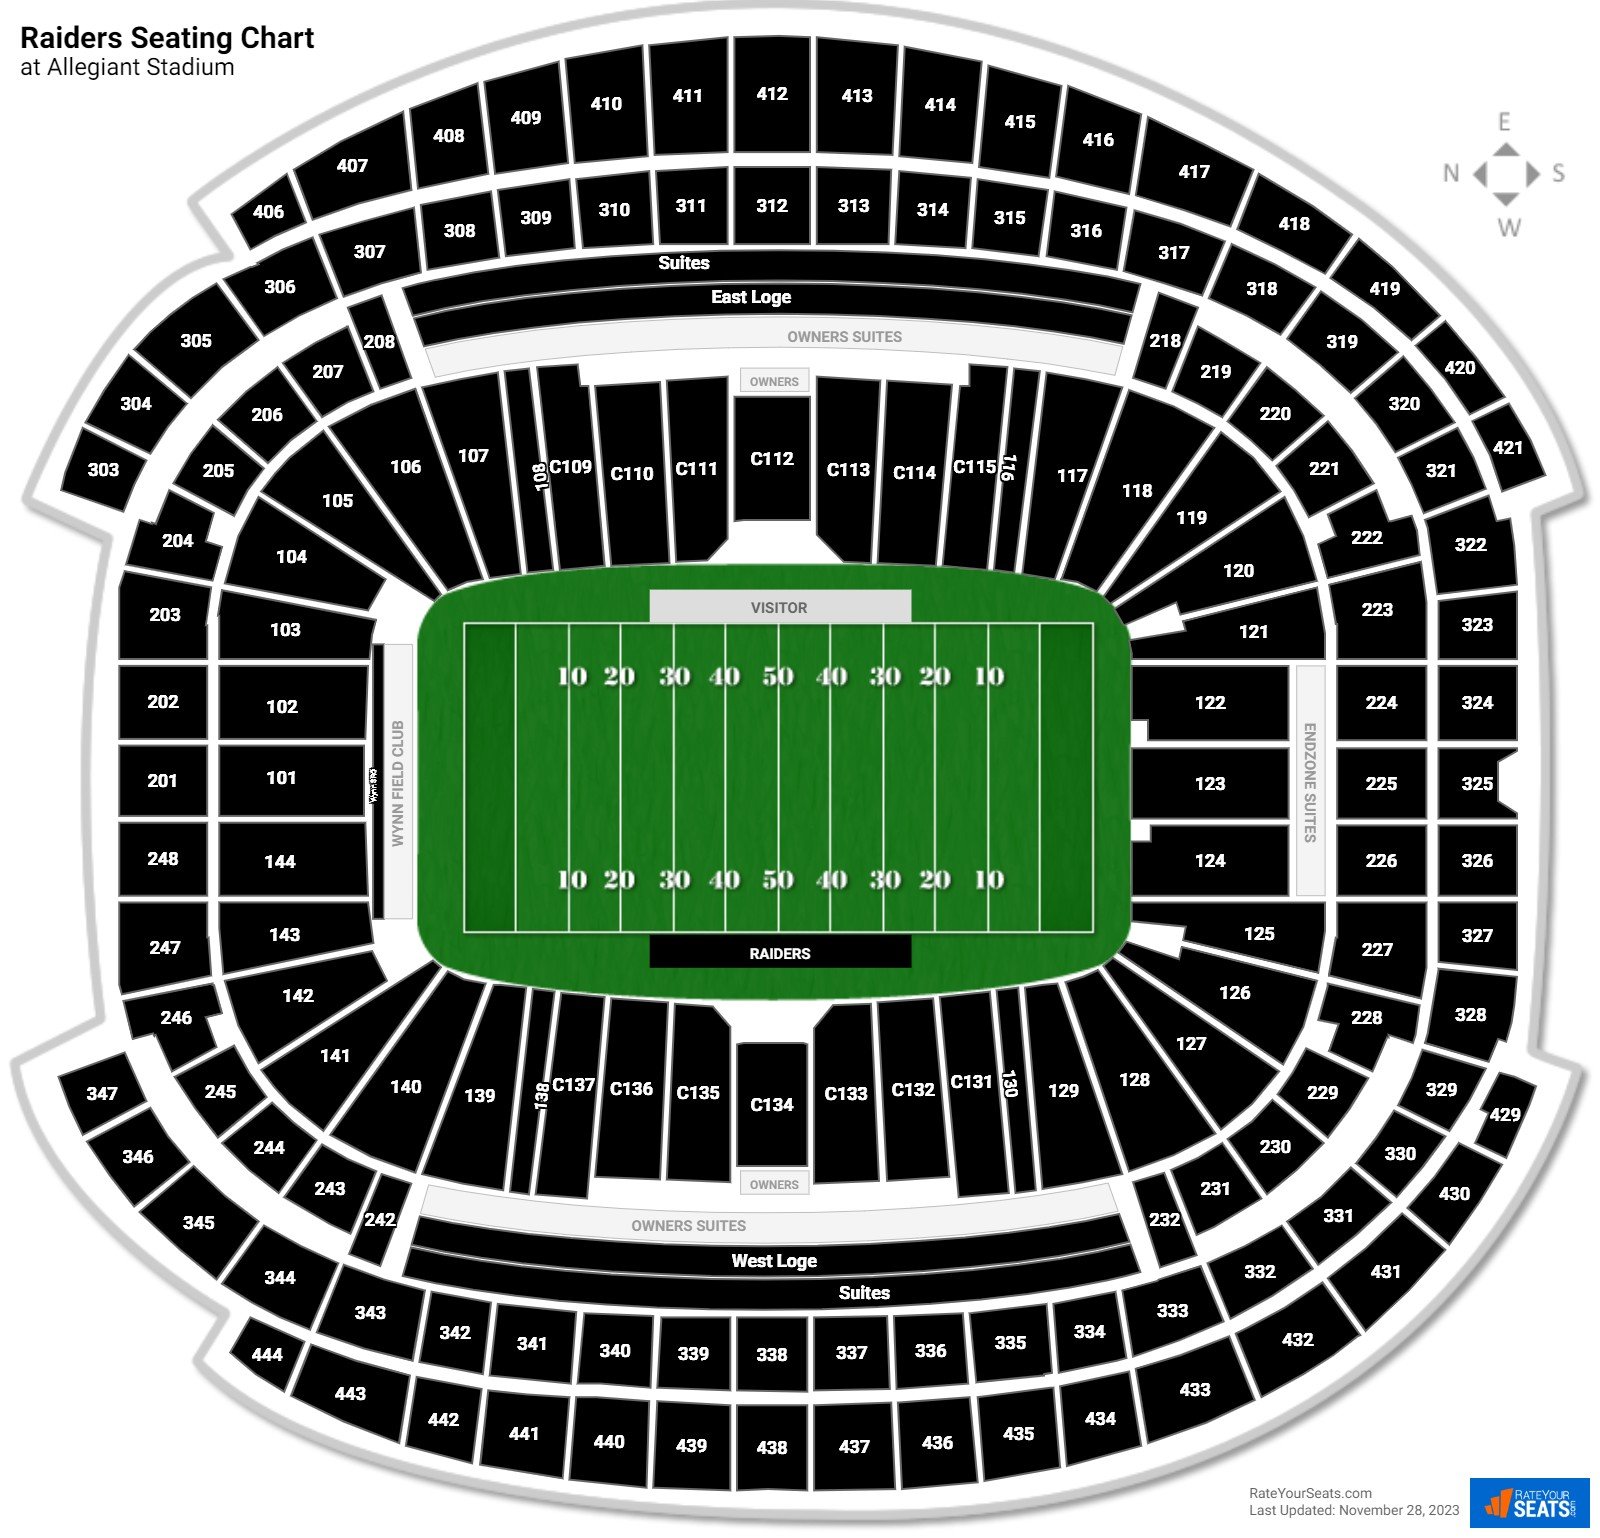 Seating and Pricing Map for Allegiant Stadium, Las Vegas Raiders